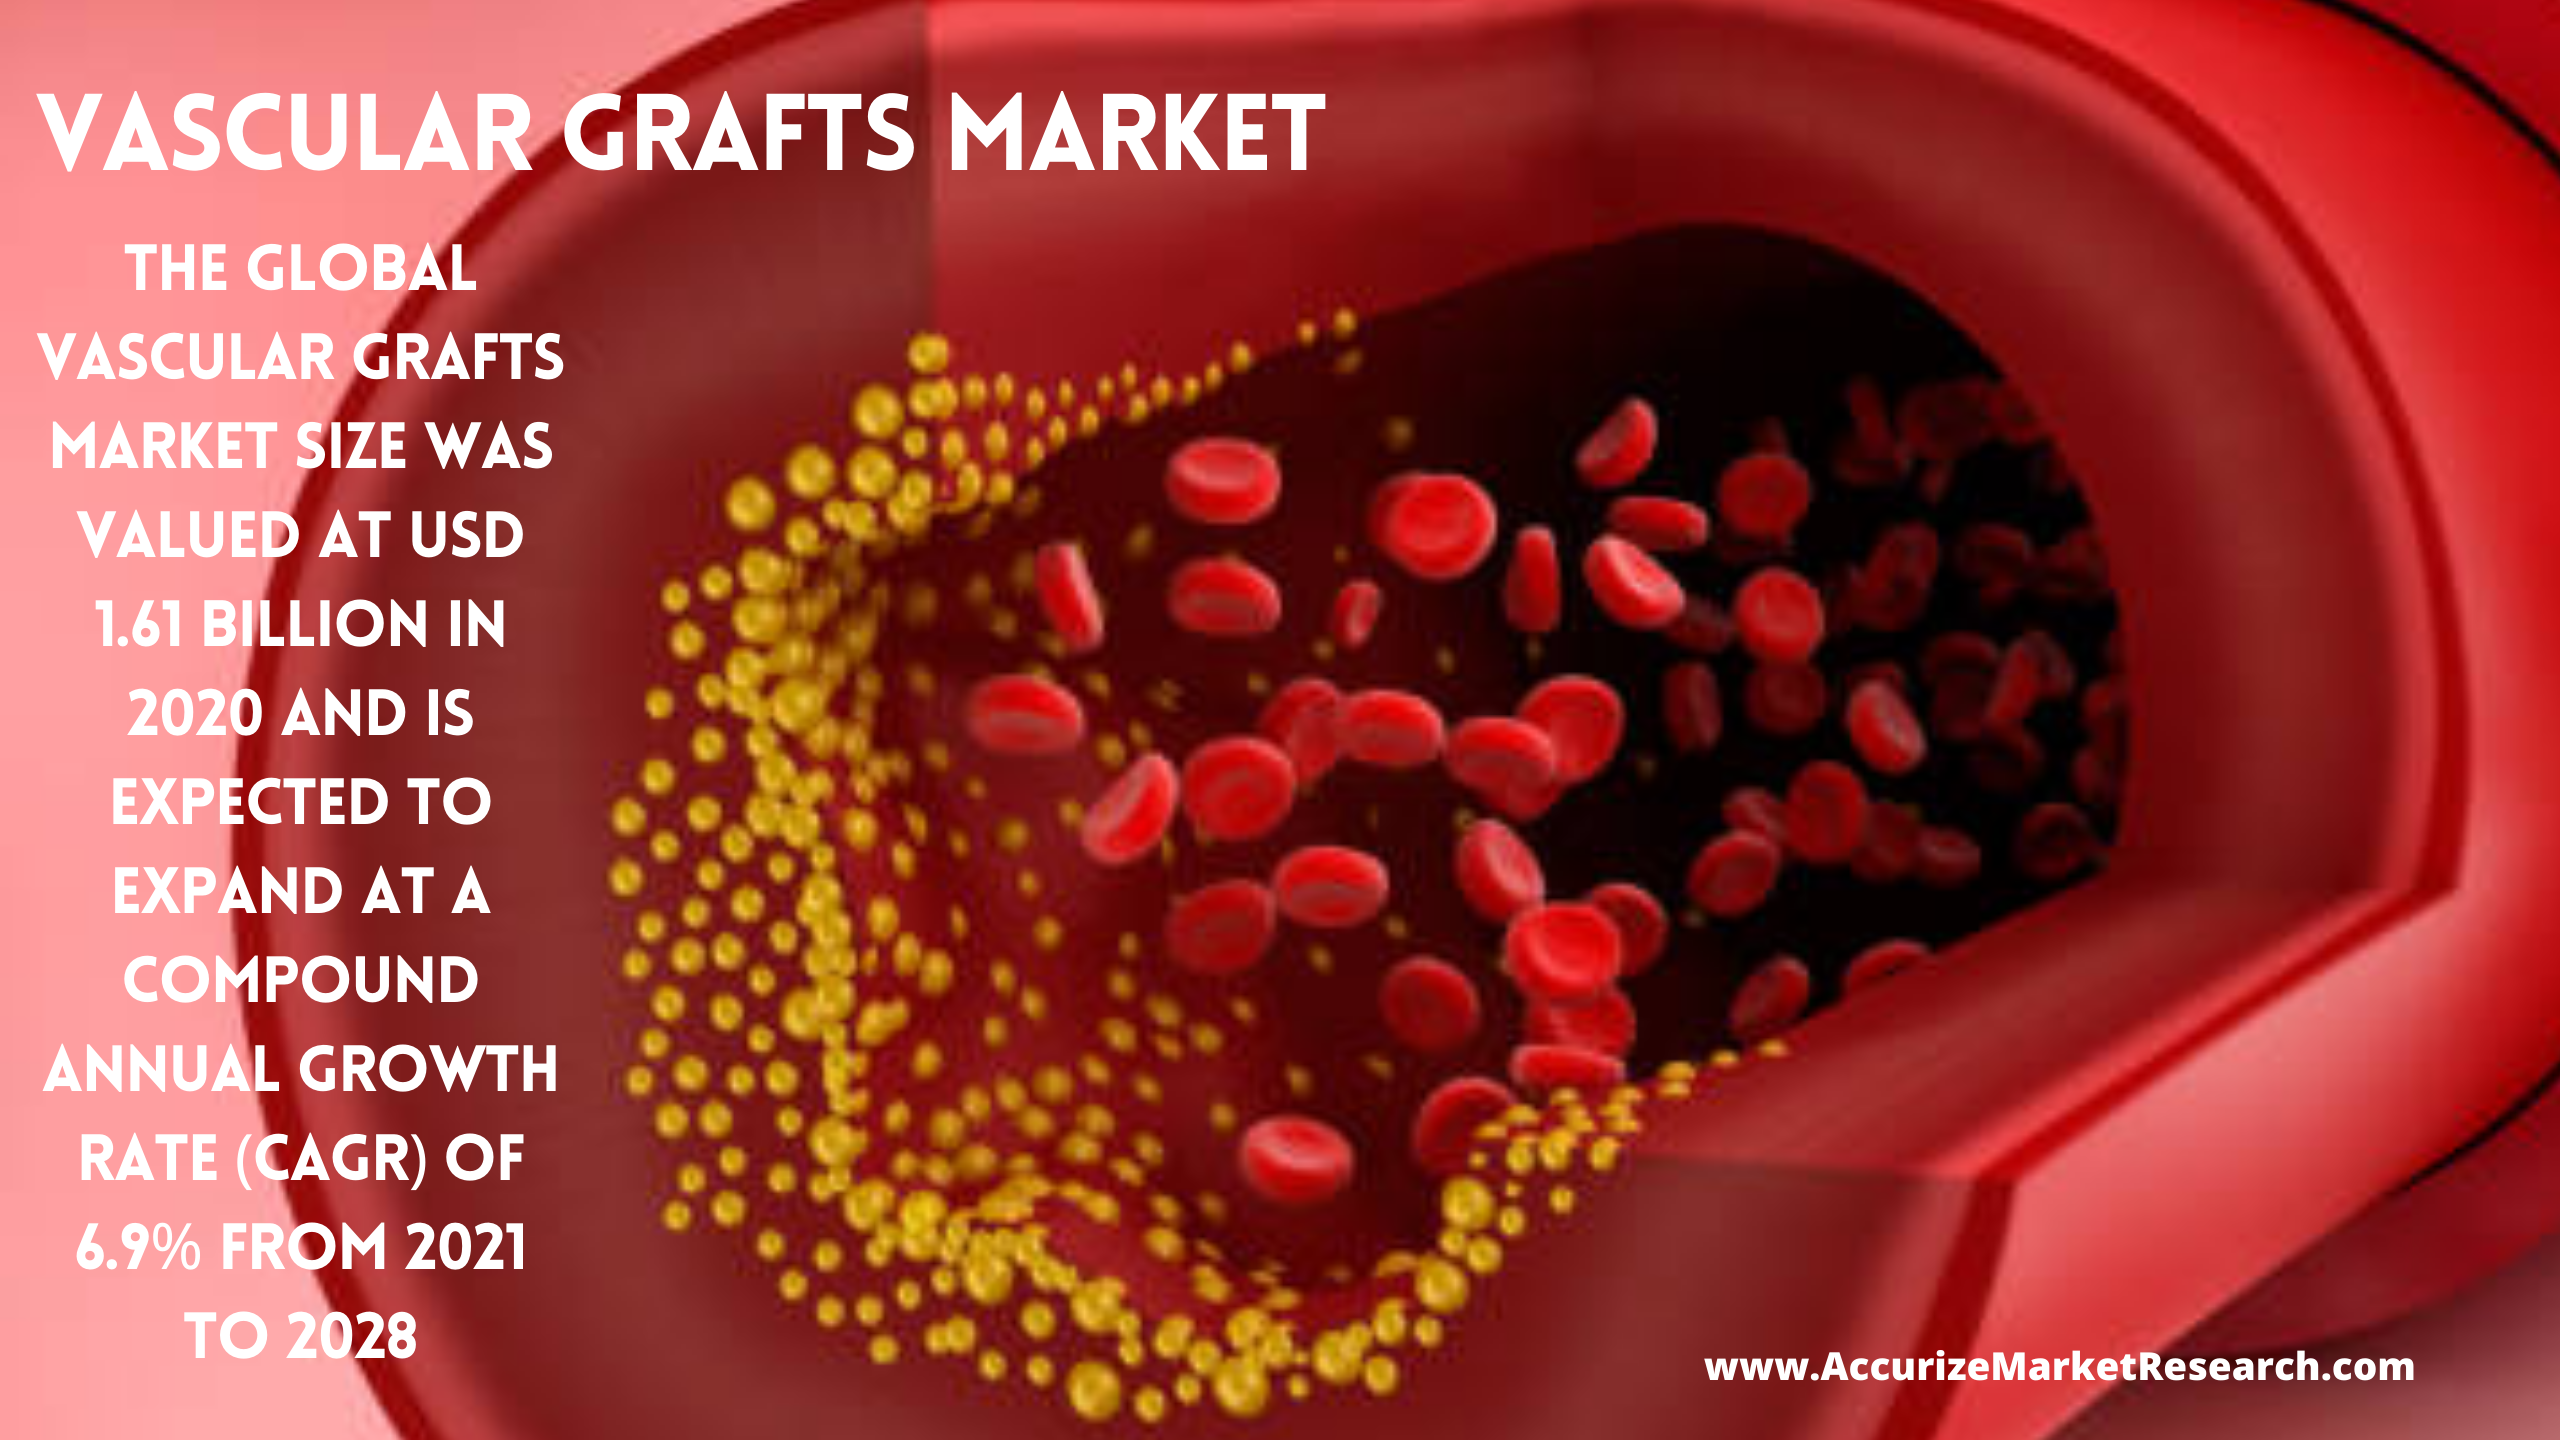 Vascular Grafts Market